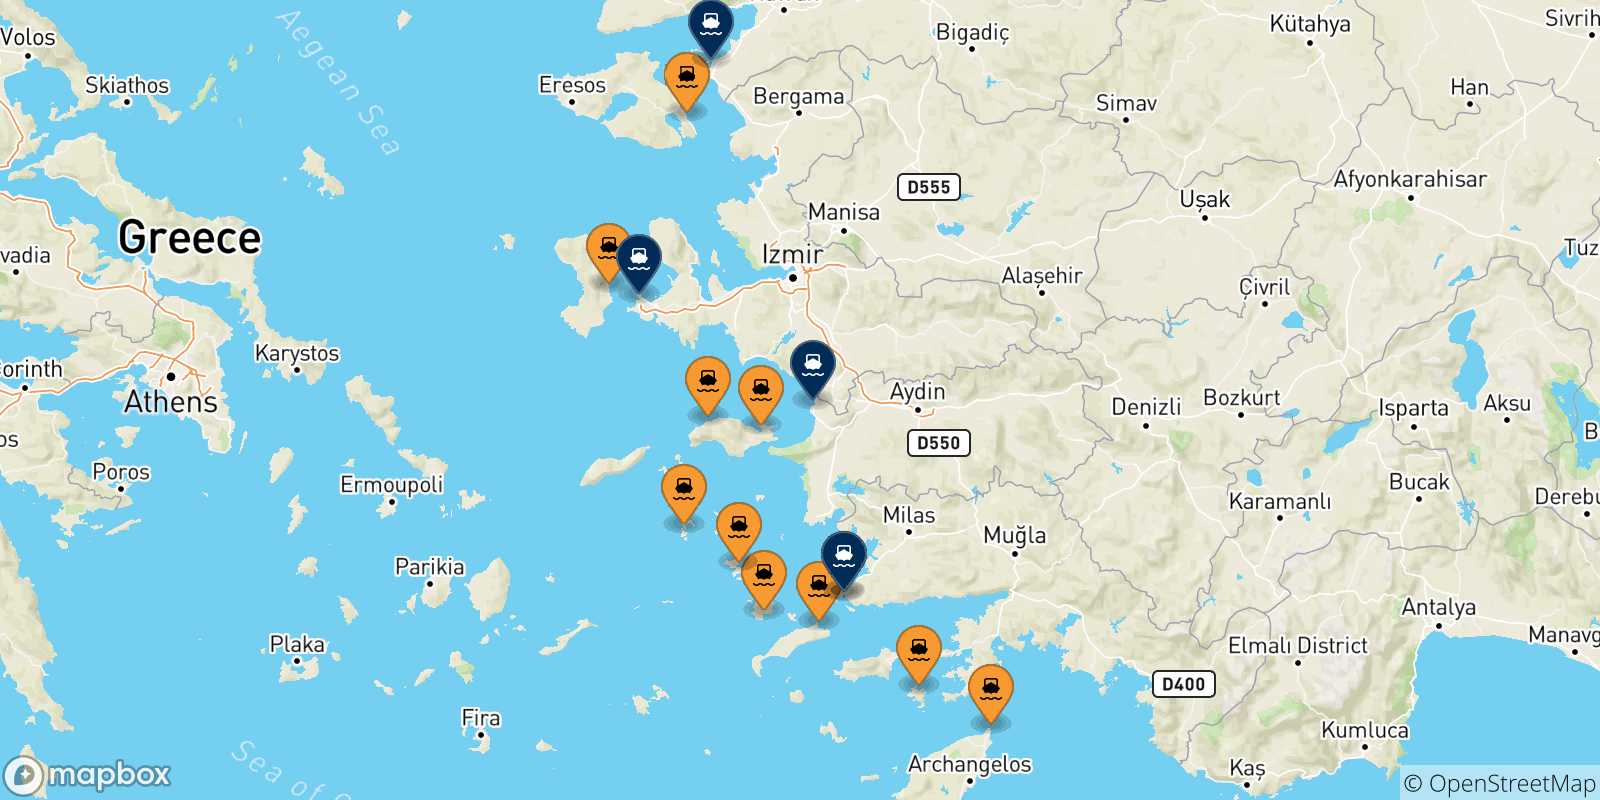 Mappa delle possibili rotte tra la Grecia e la Turchia